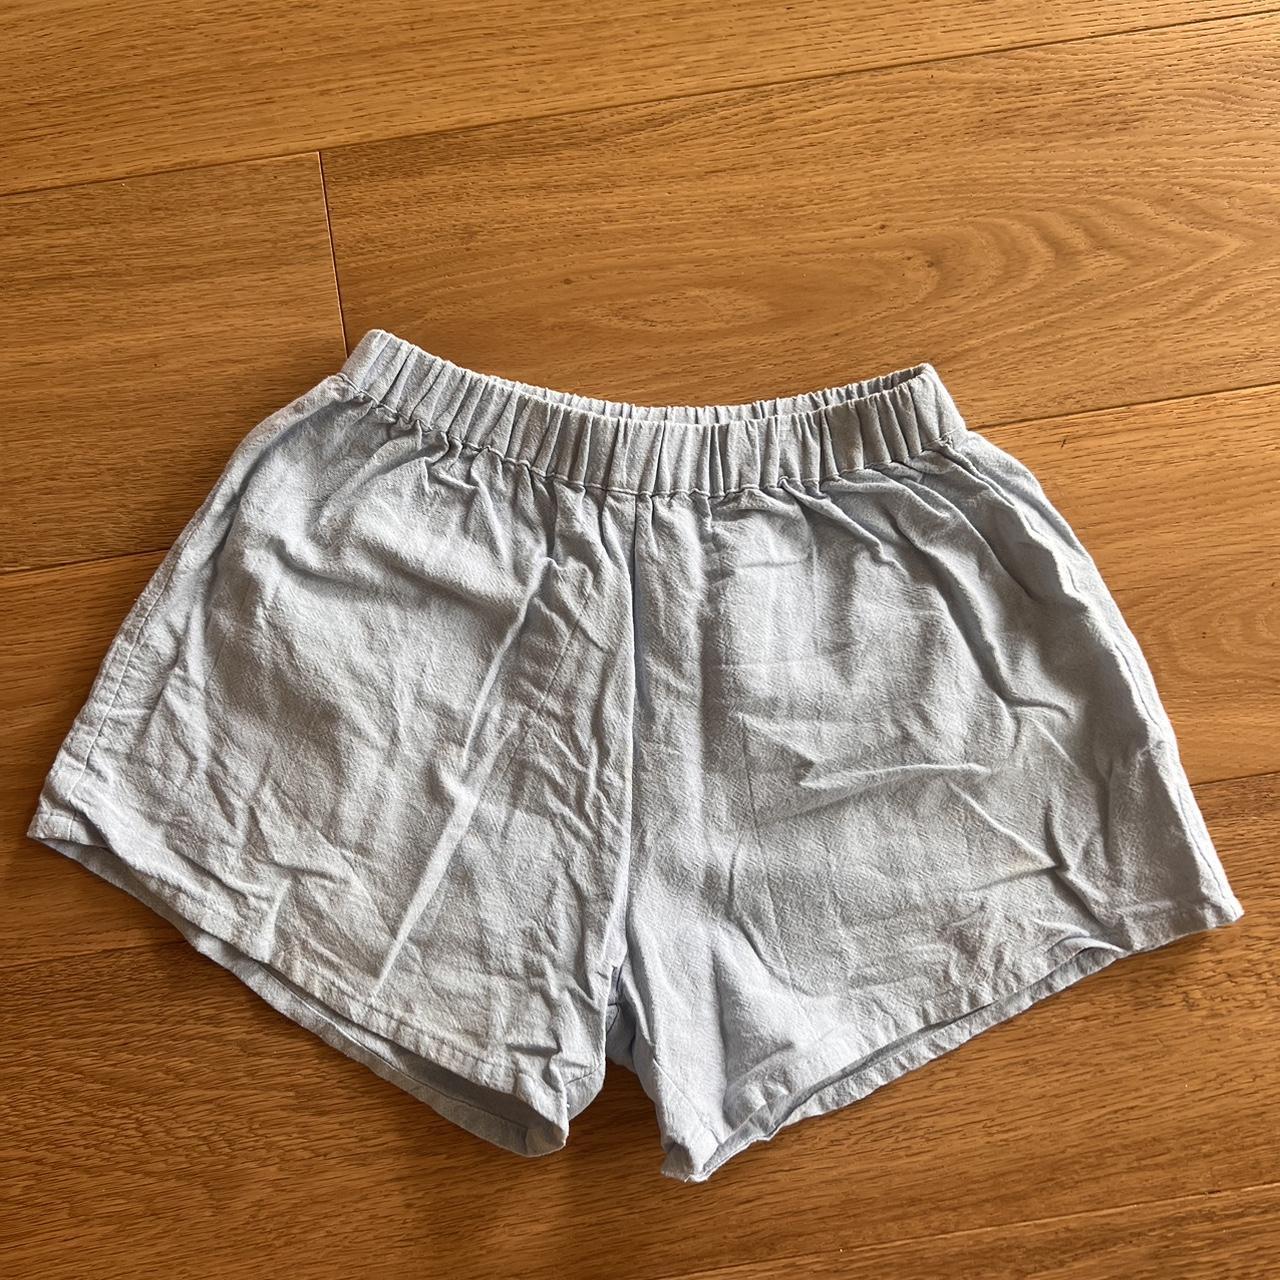 Soft blue 100% linen shorts S/m size Would fit size 8 - Depop